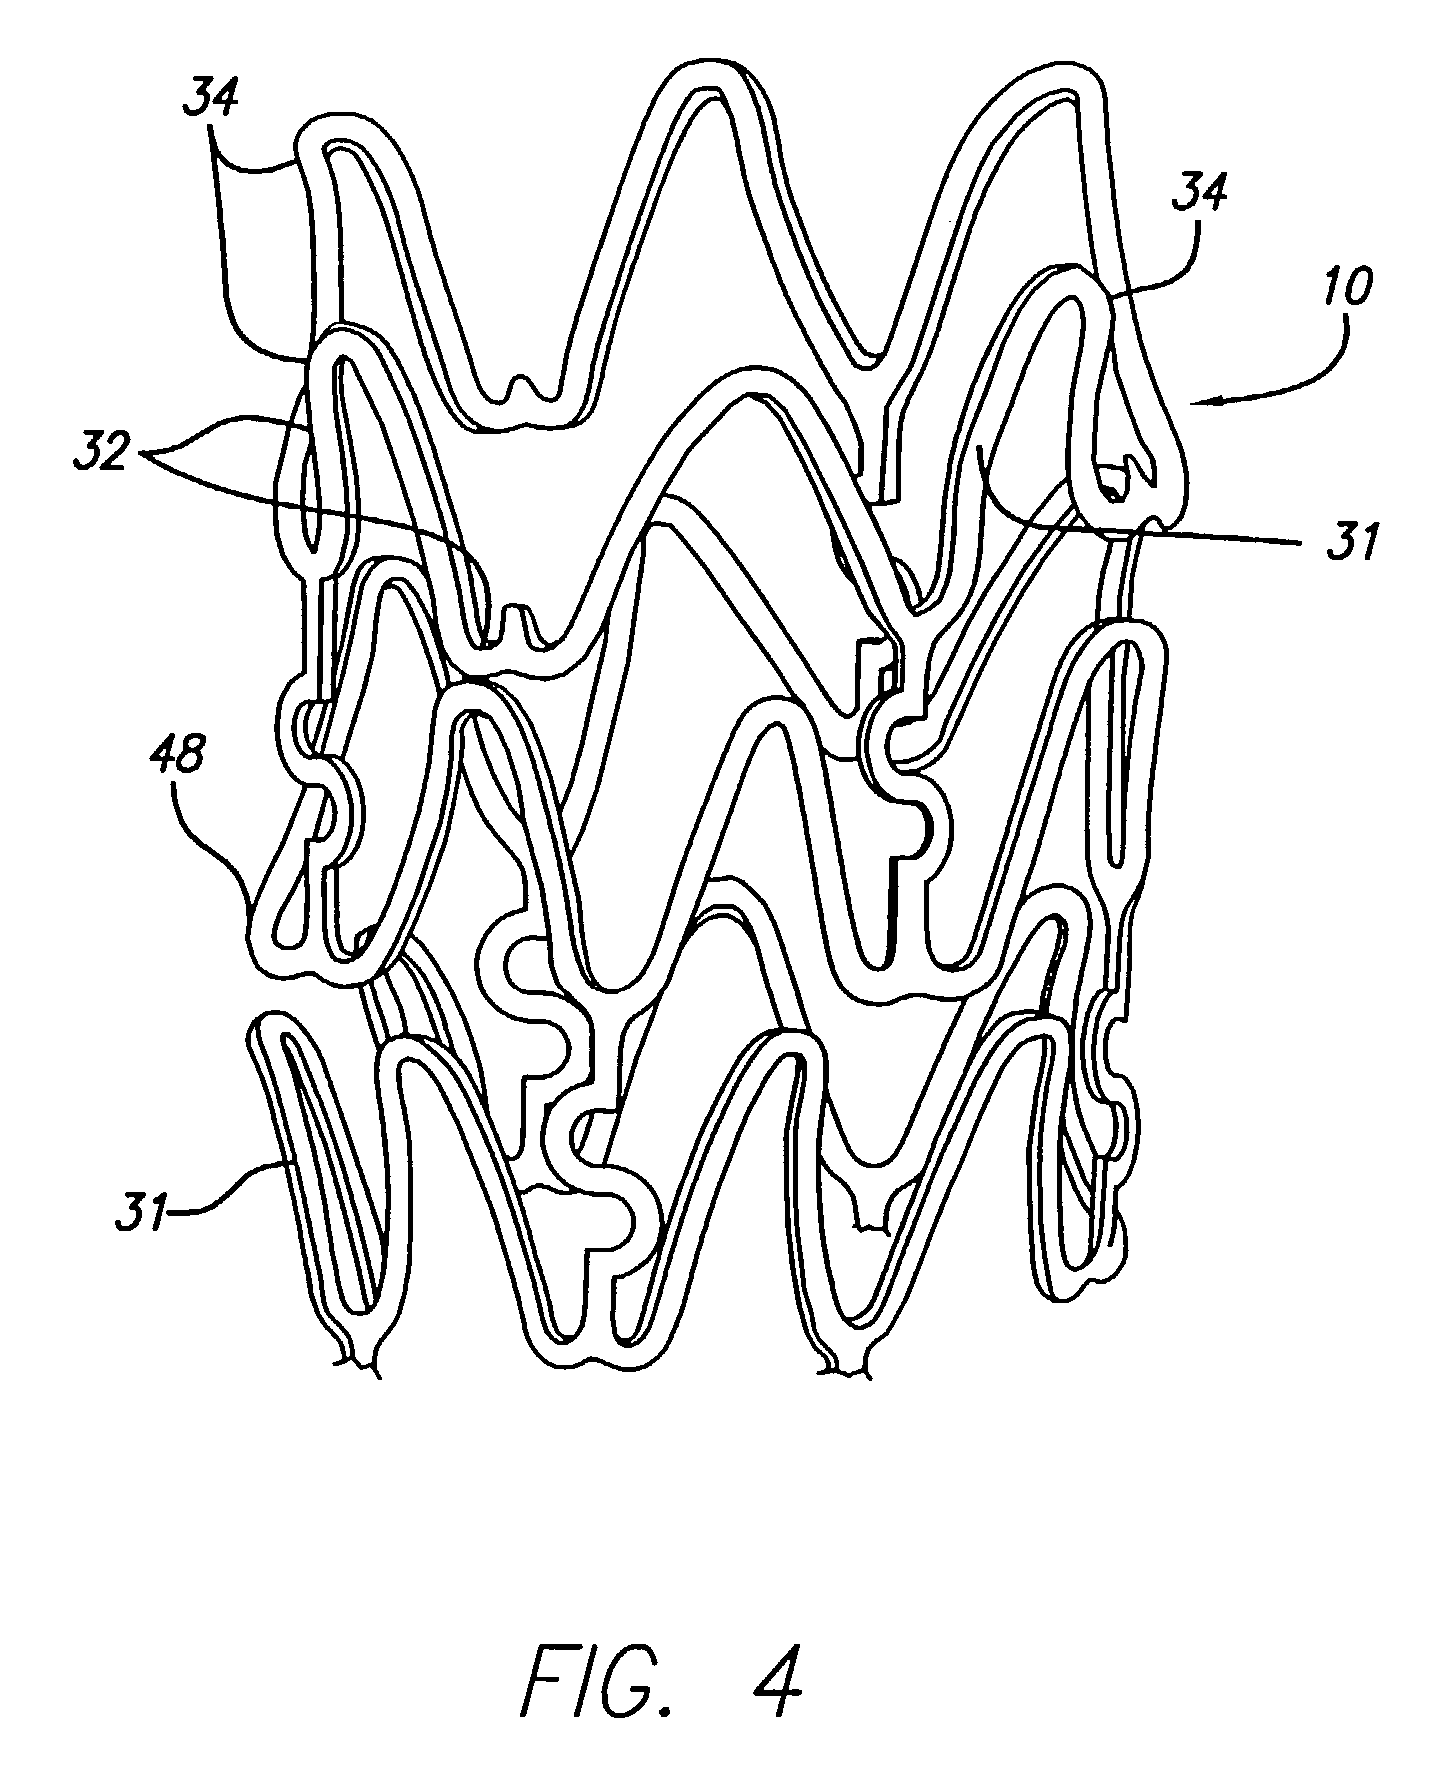 Polymer link hybrid stent